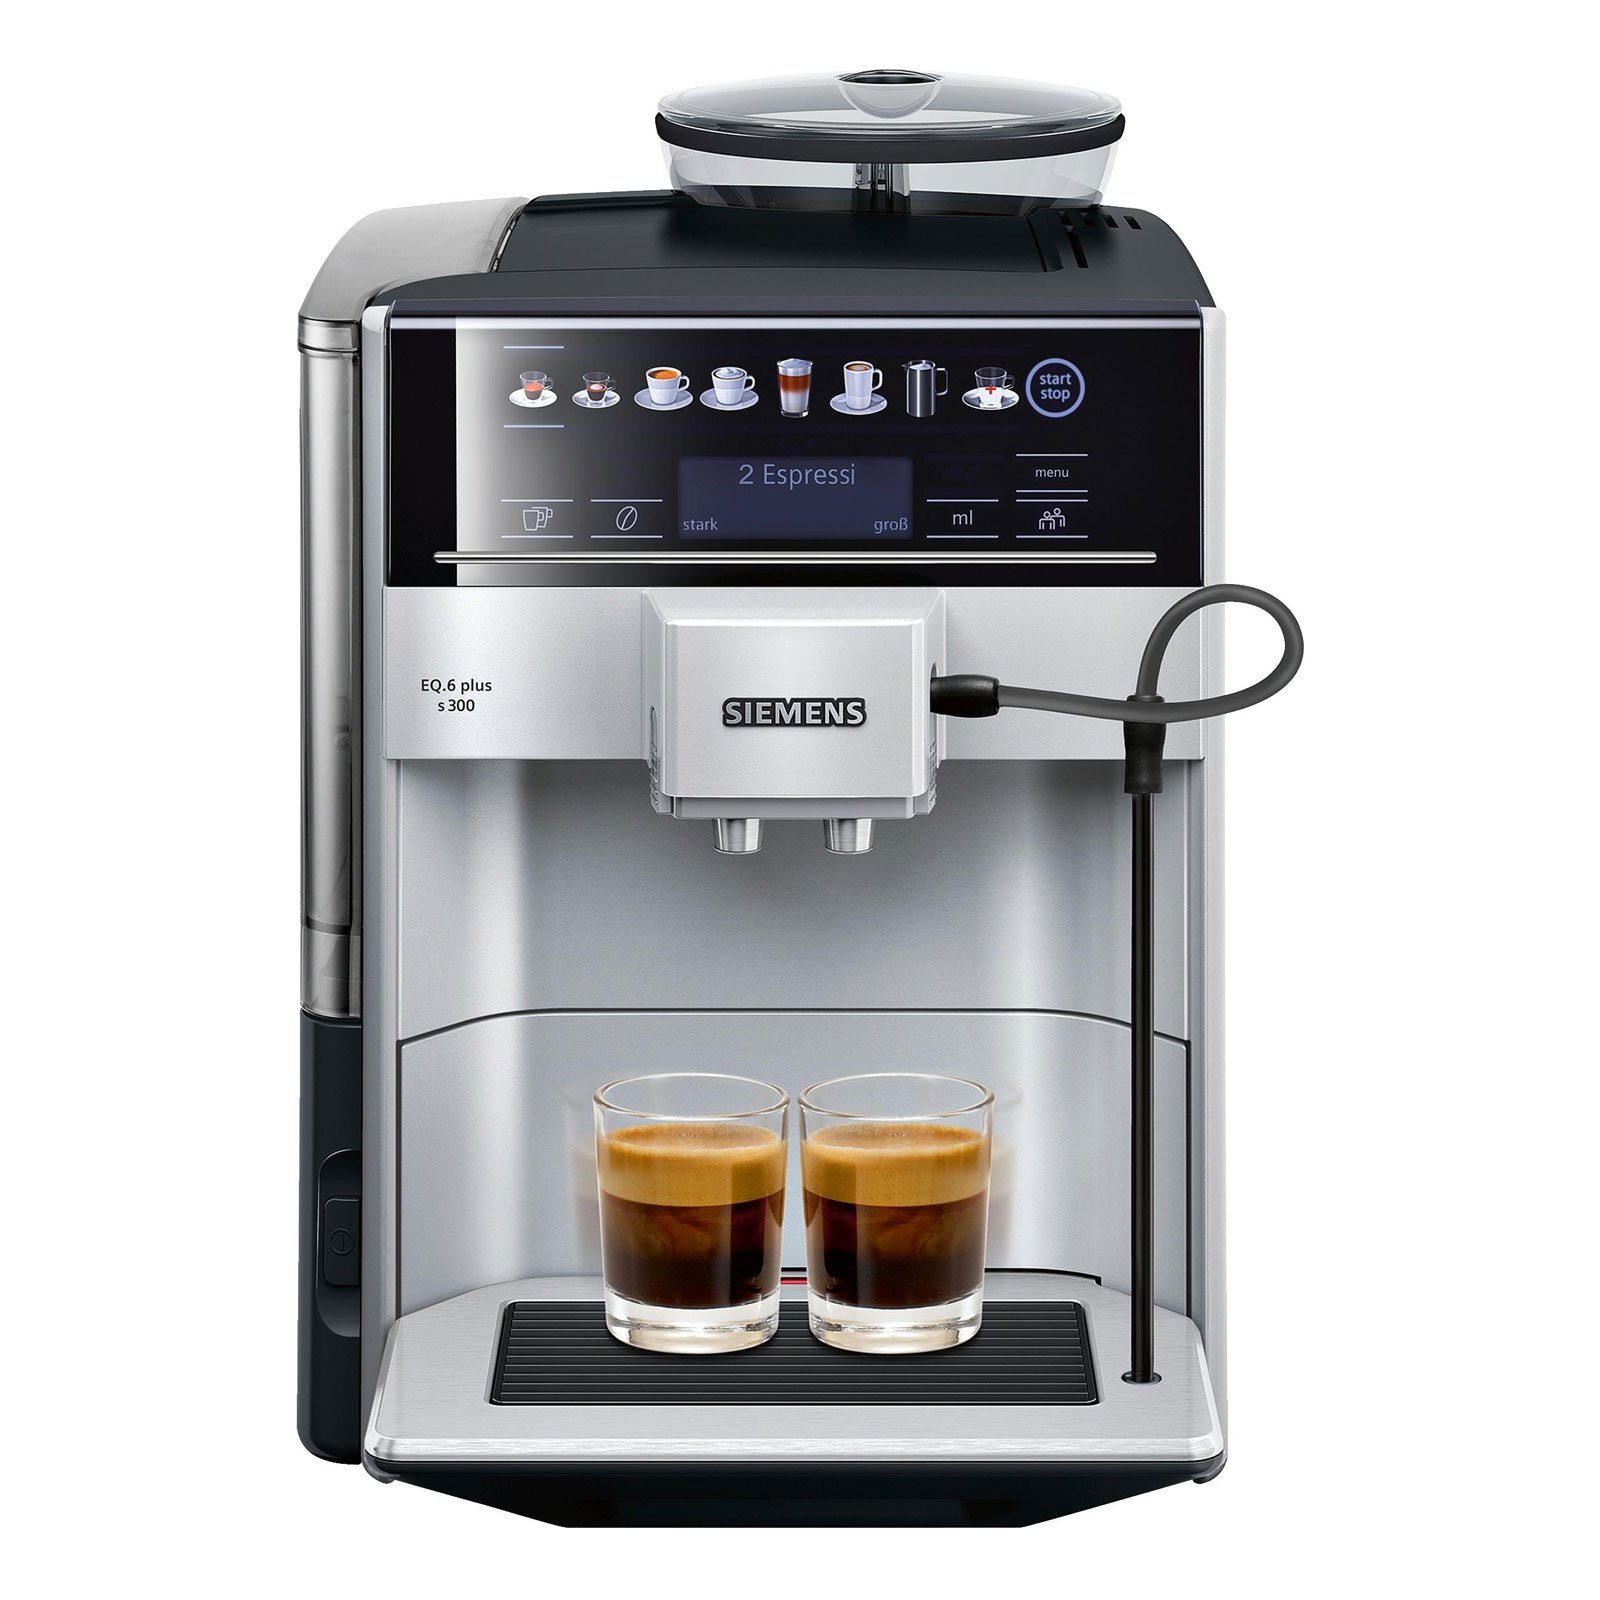 SIEMENS Kaffeevollautomat TE653501DE EQ.6 plus s300